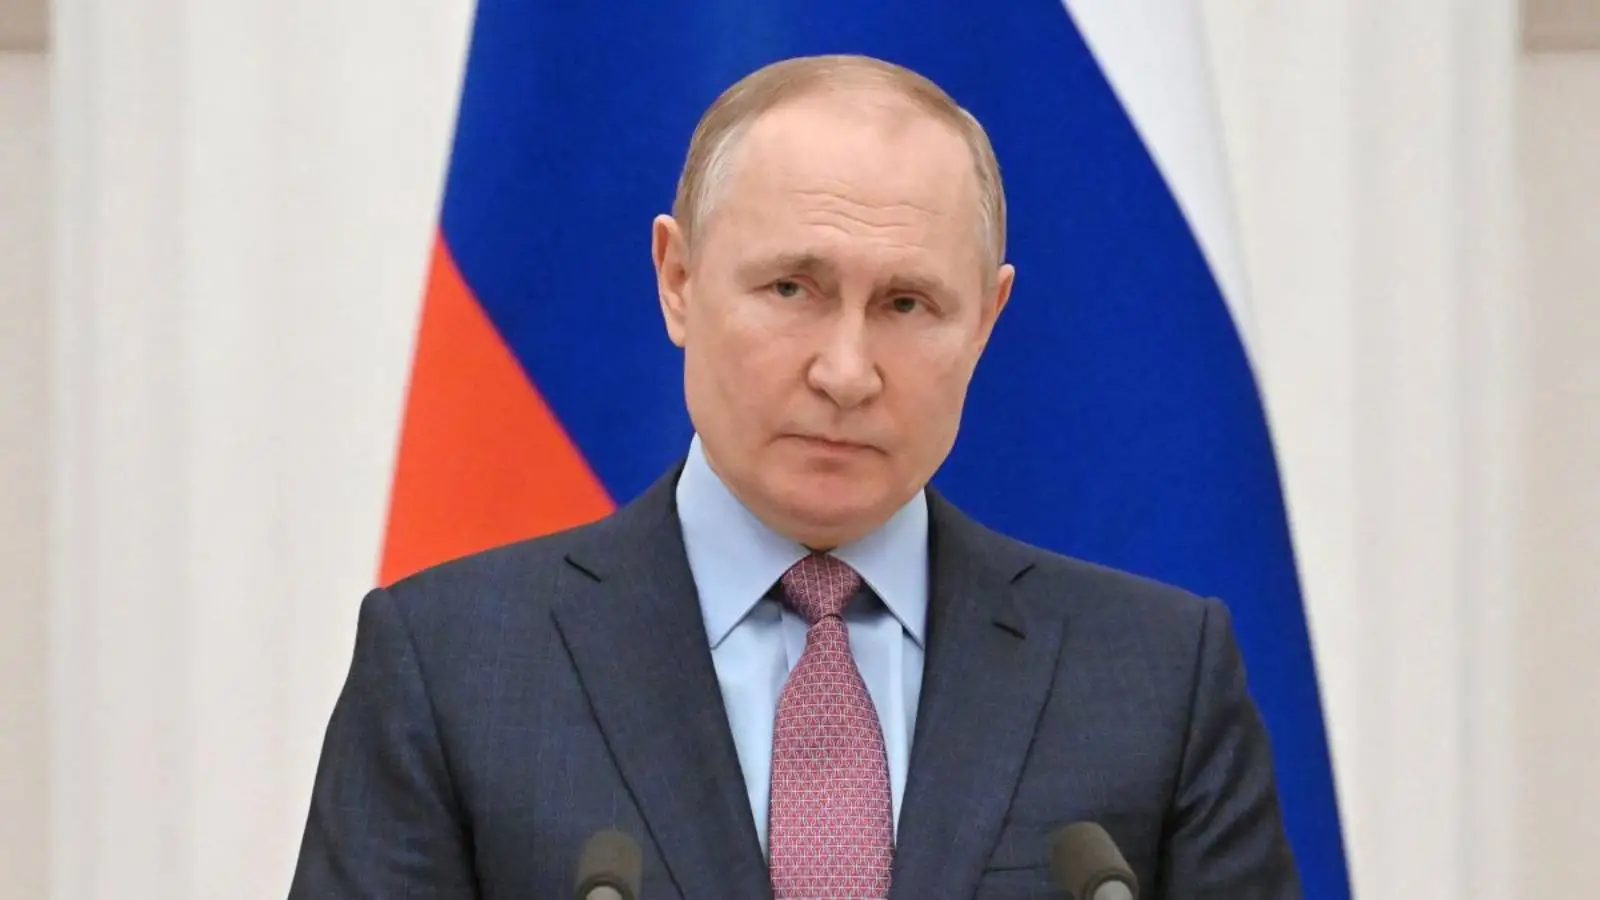 Combien de personnes la Russie a-t-elle mobilisées depuis l'annonce de Poutine qui a effrayé les Russes